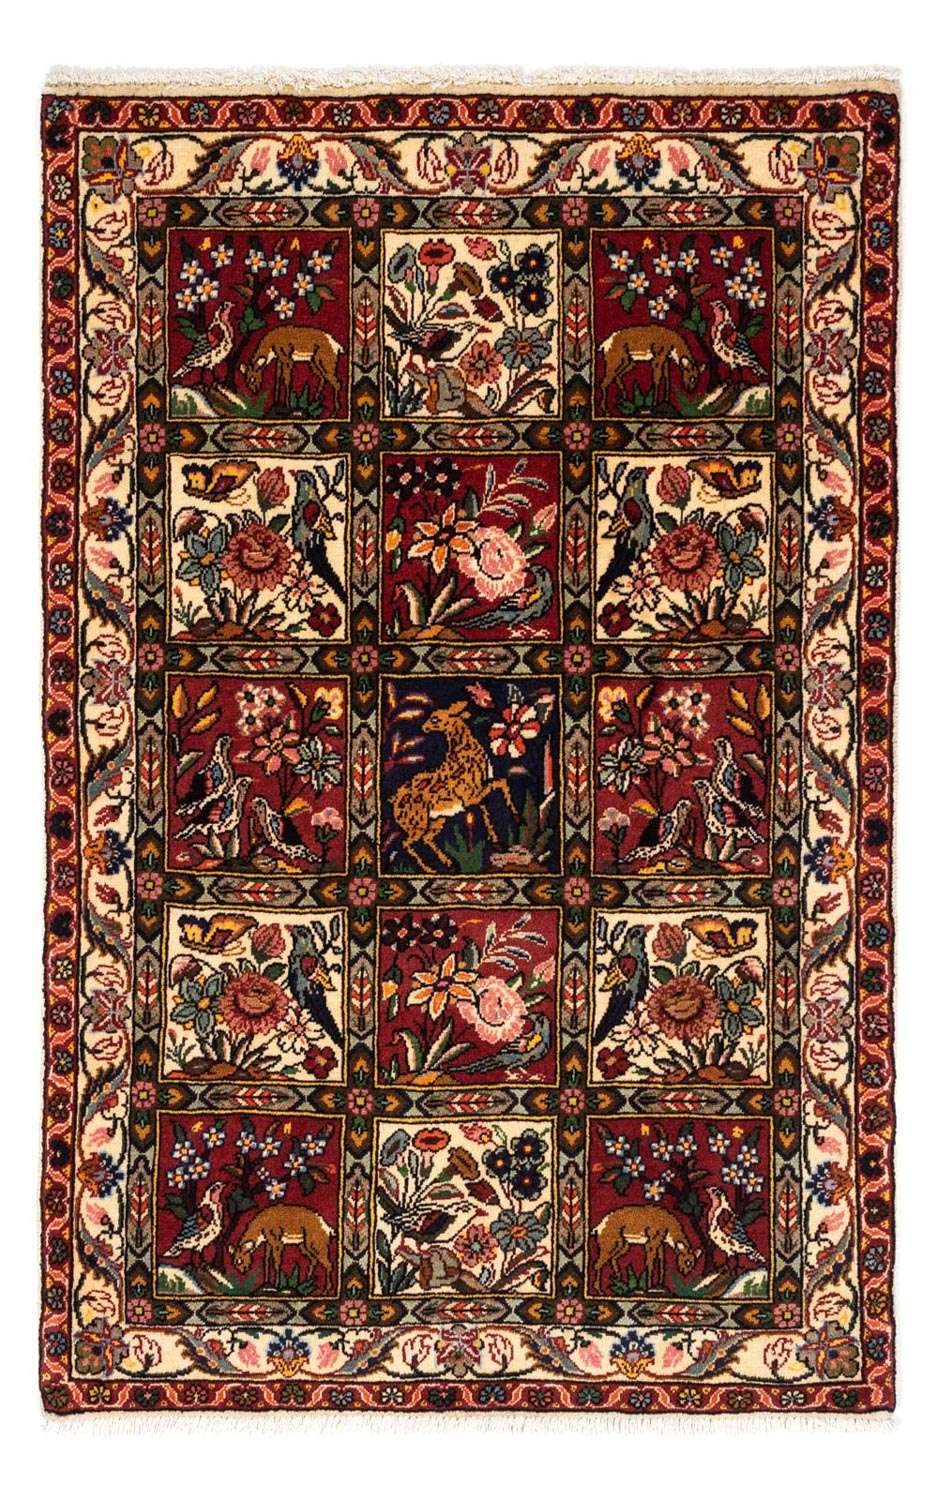 Alfombra persa - Nómada - 150 x 100 cm - multicolor